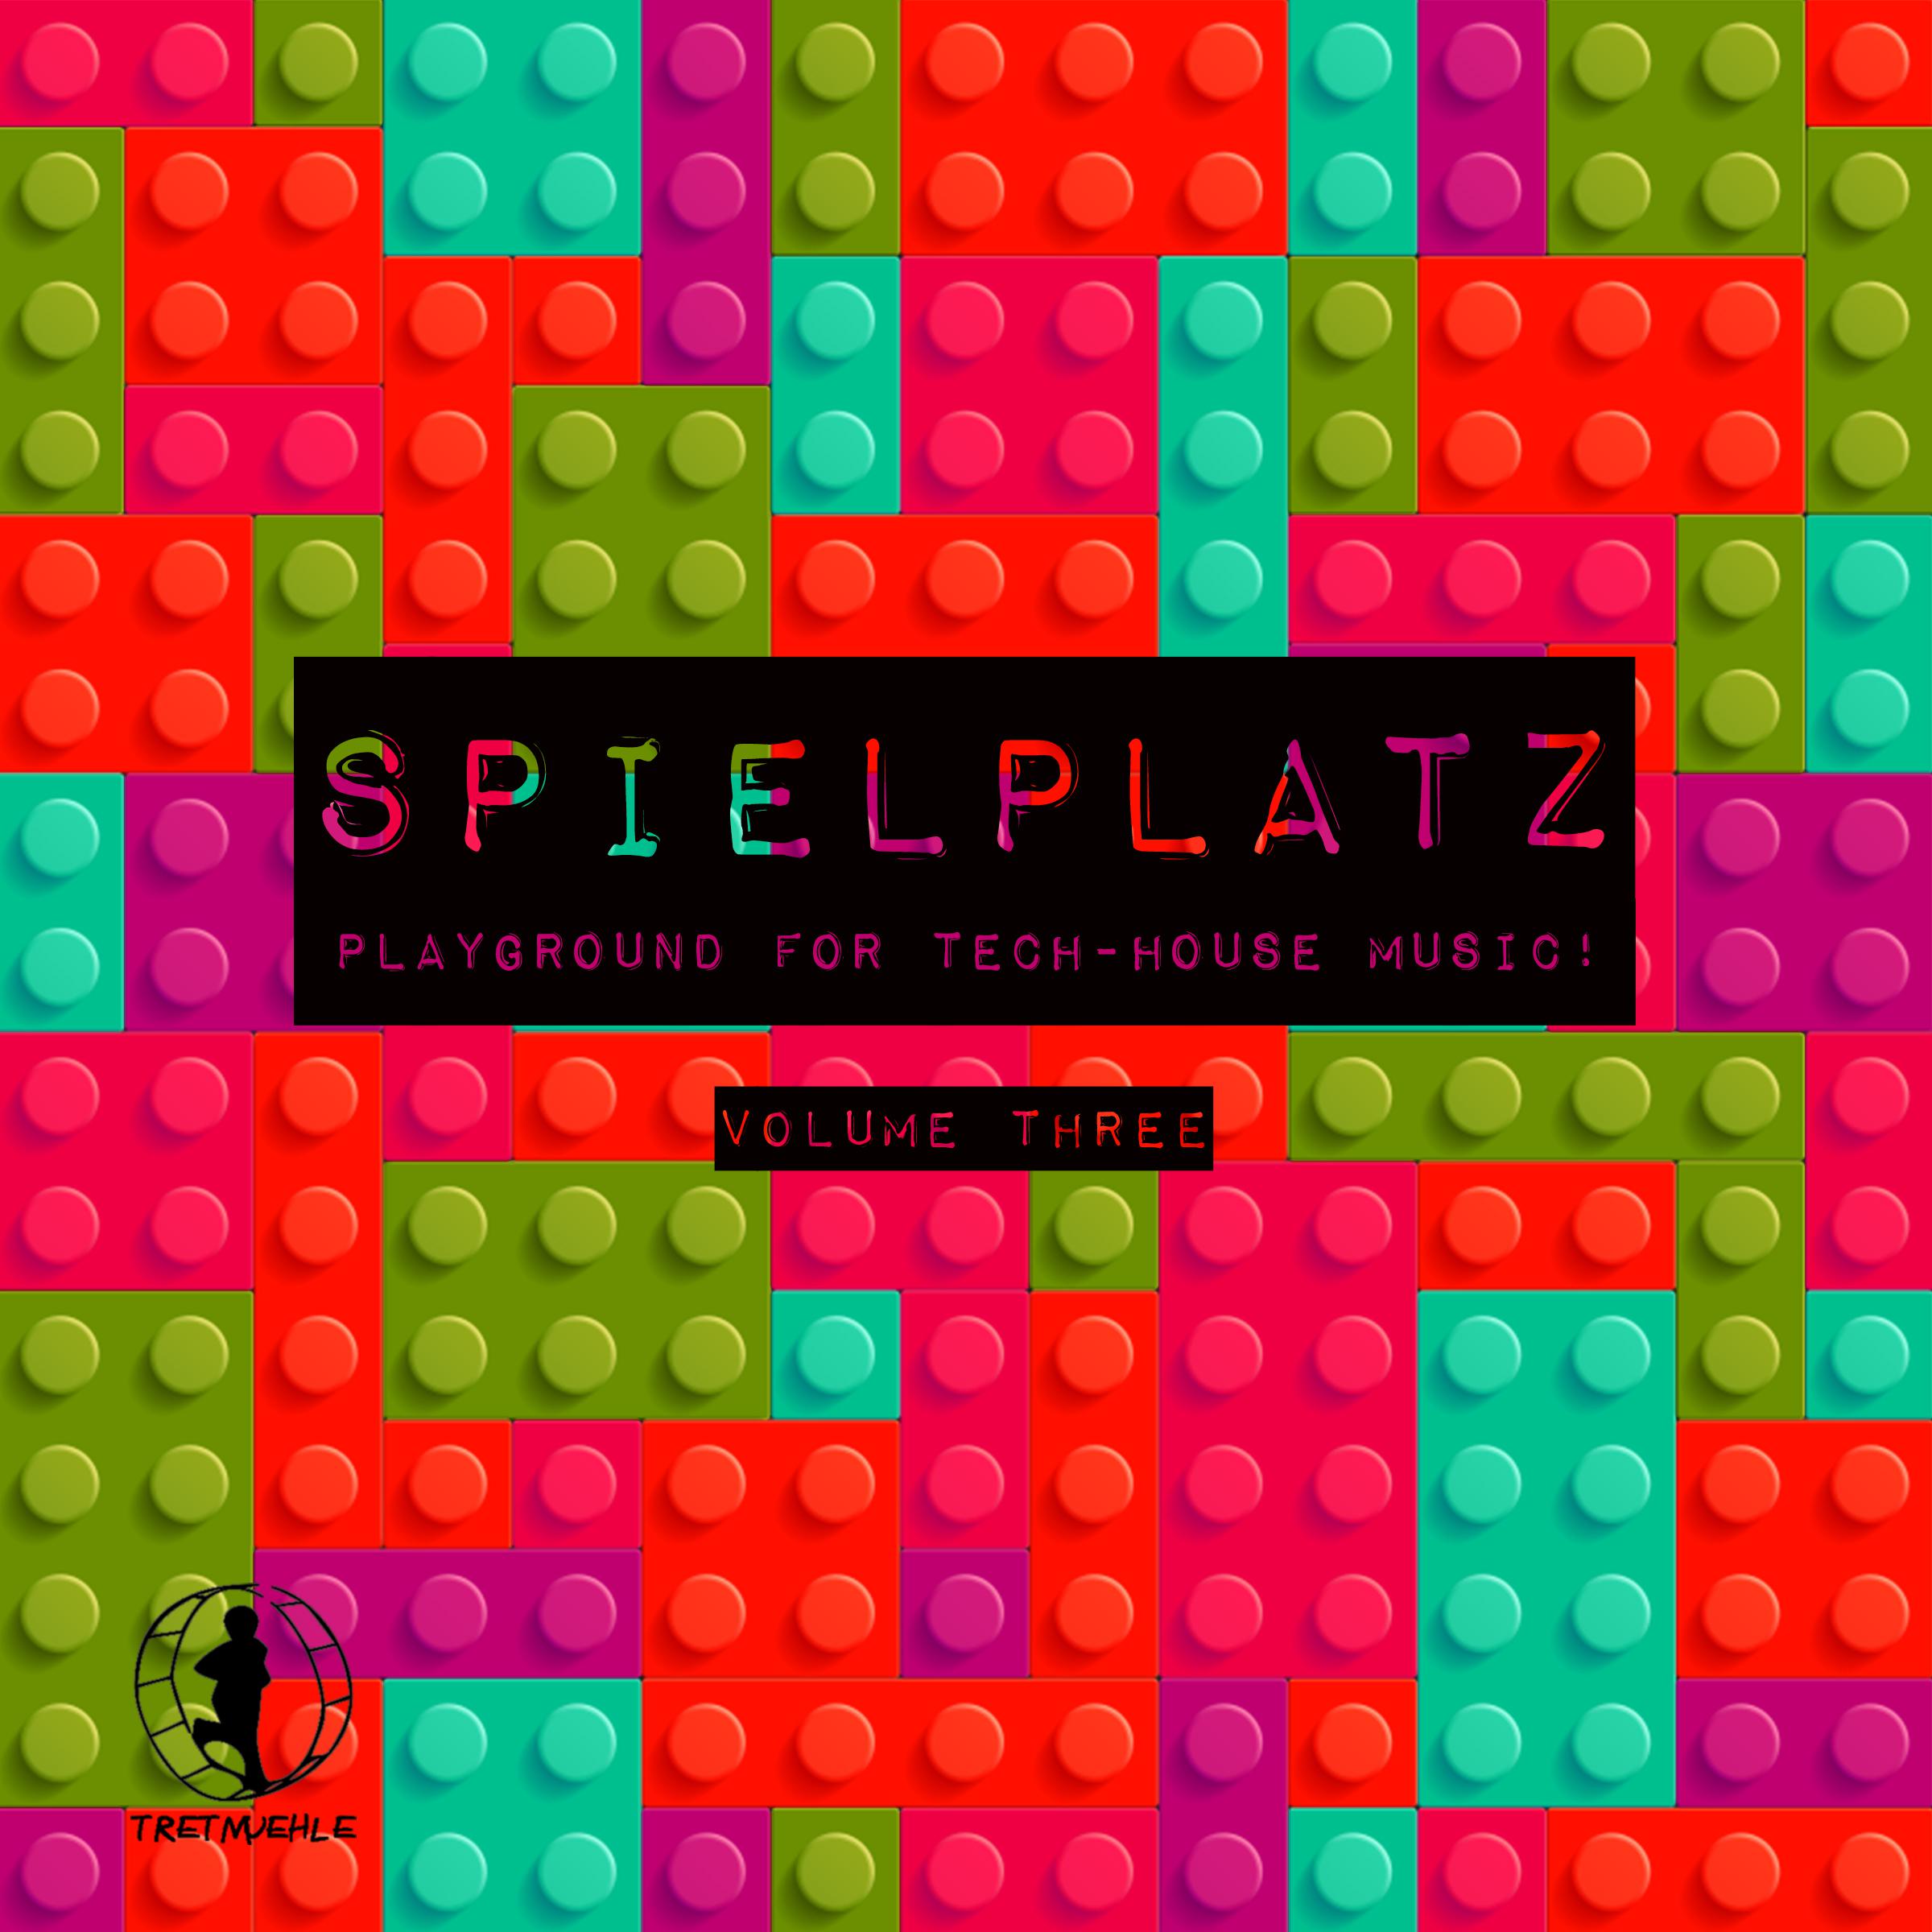 Spielplatz, Vol. 3 - Playground for Tech-House Music!